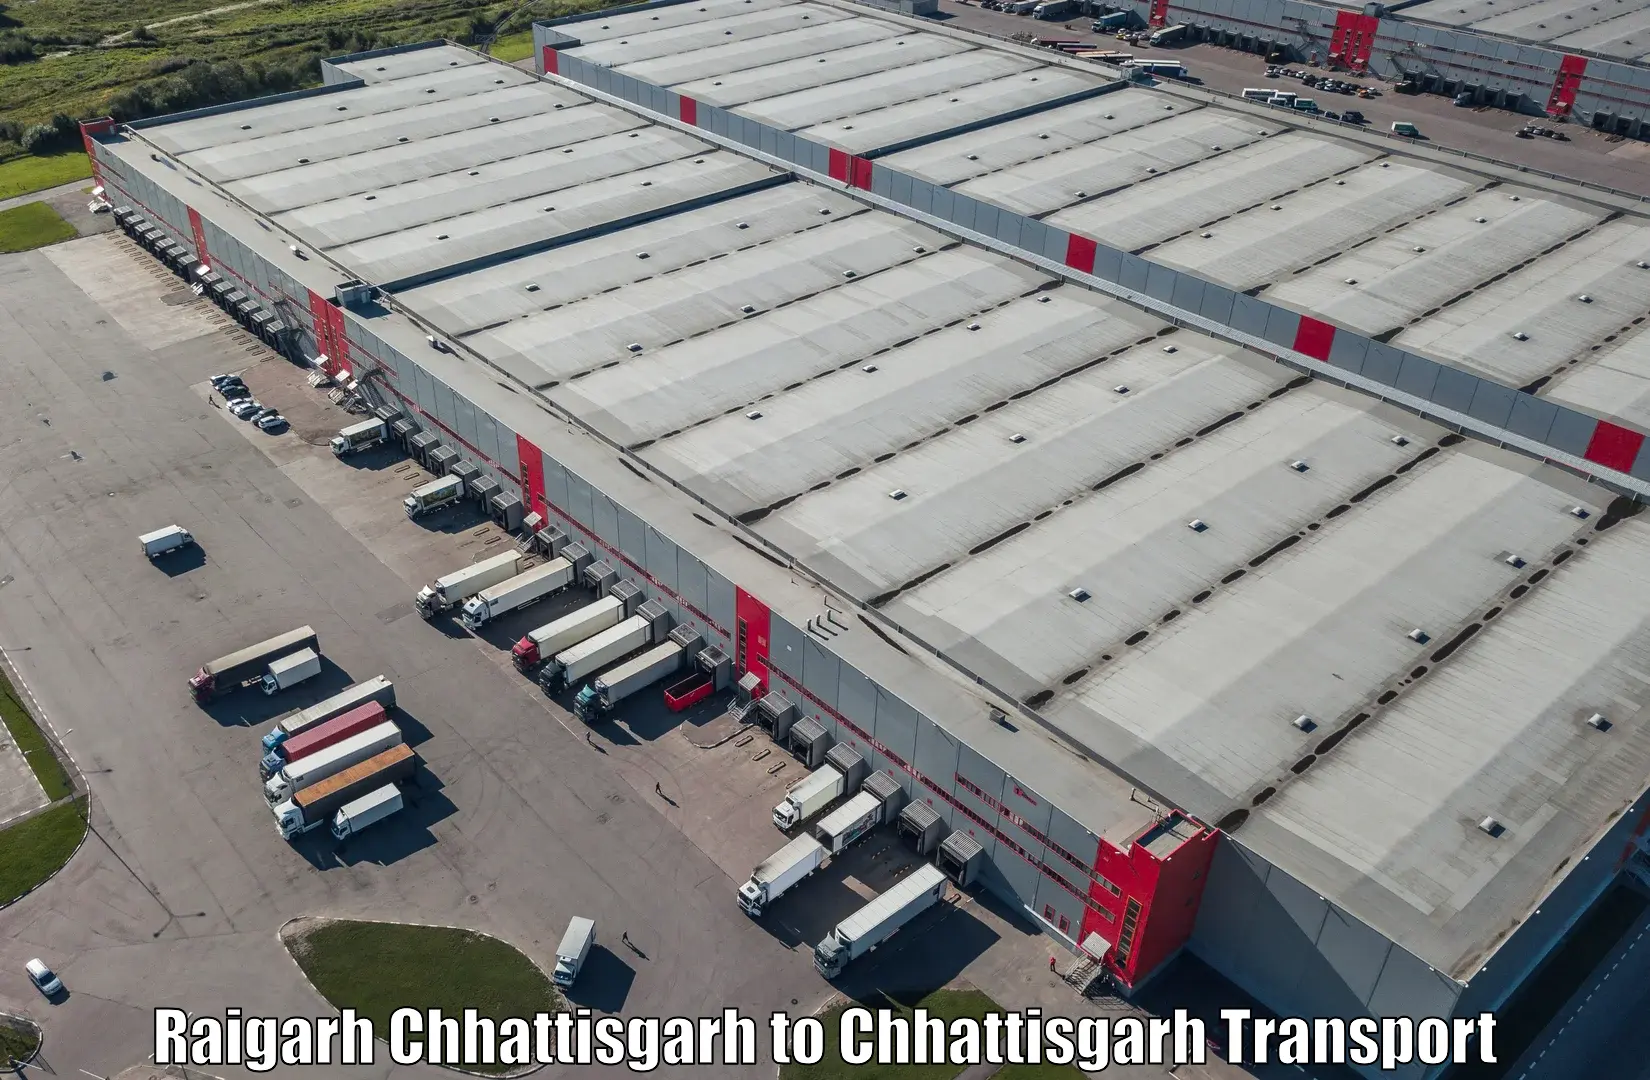 Delivery service Raigarh Chhattisgarh to Chirimiri